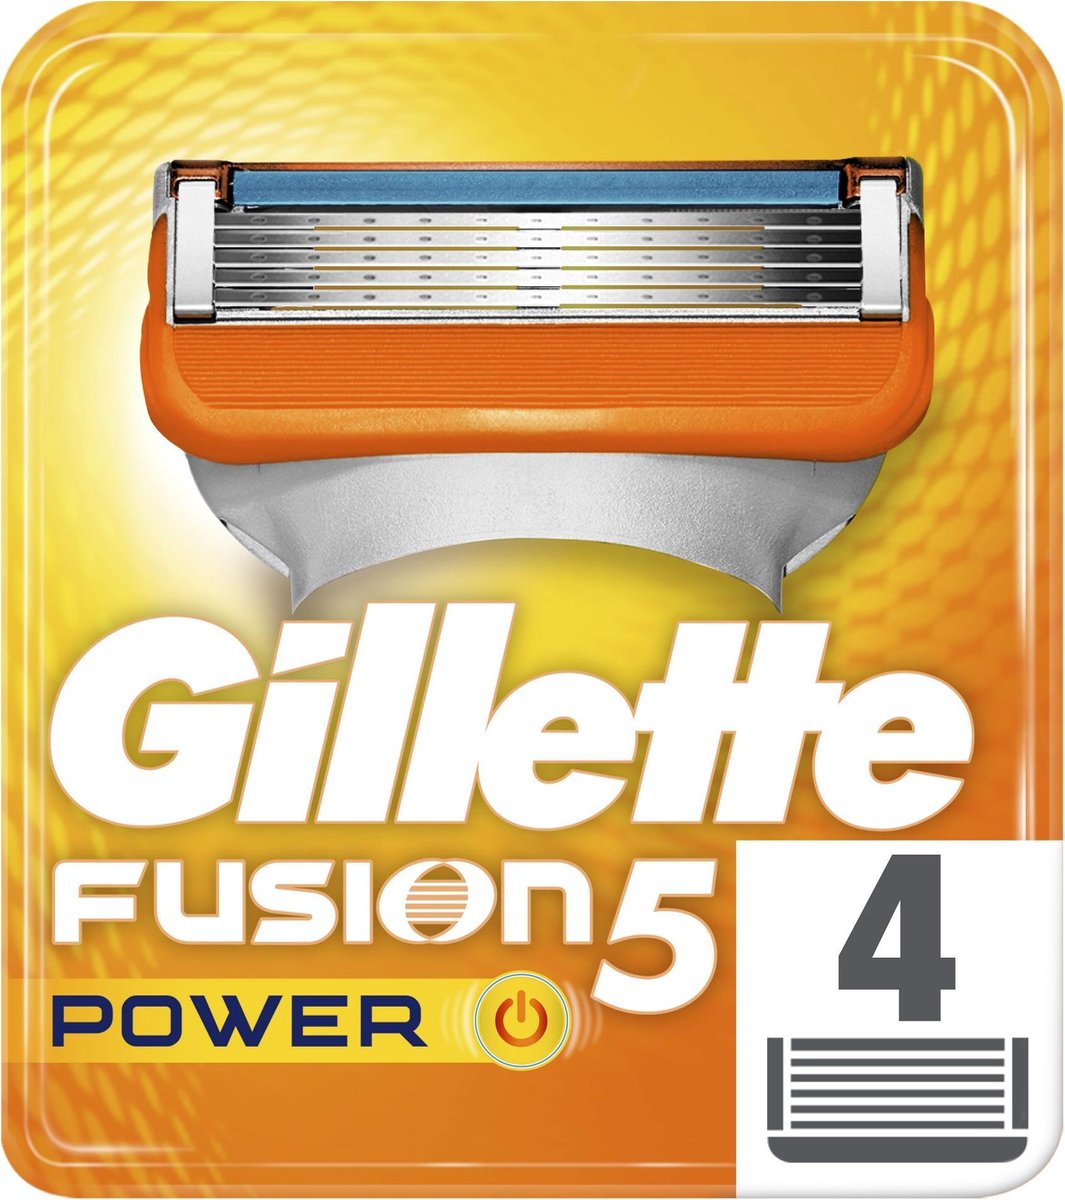 Gillette Fusion5 Power Scheermesjes Mannen - 4 stuks - Gillette